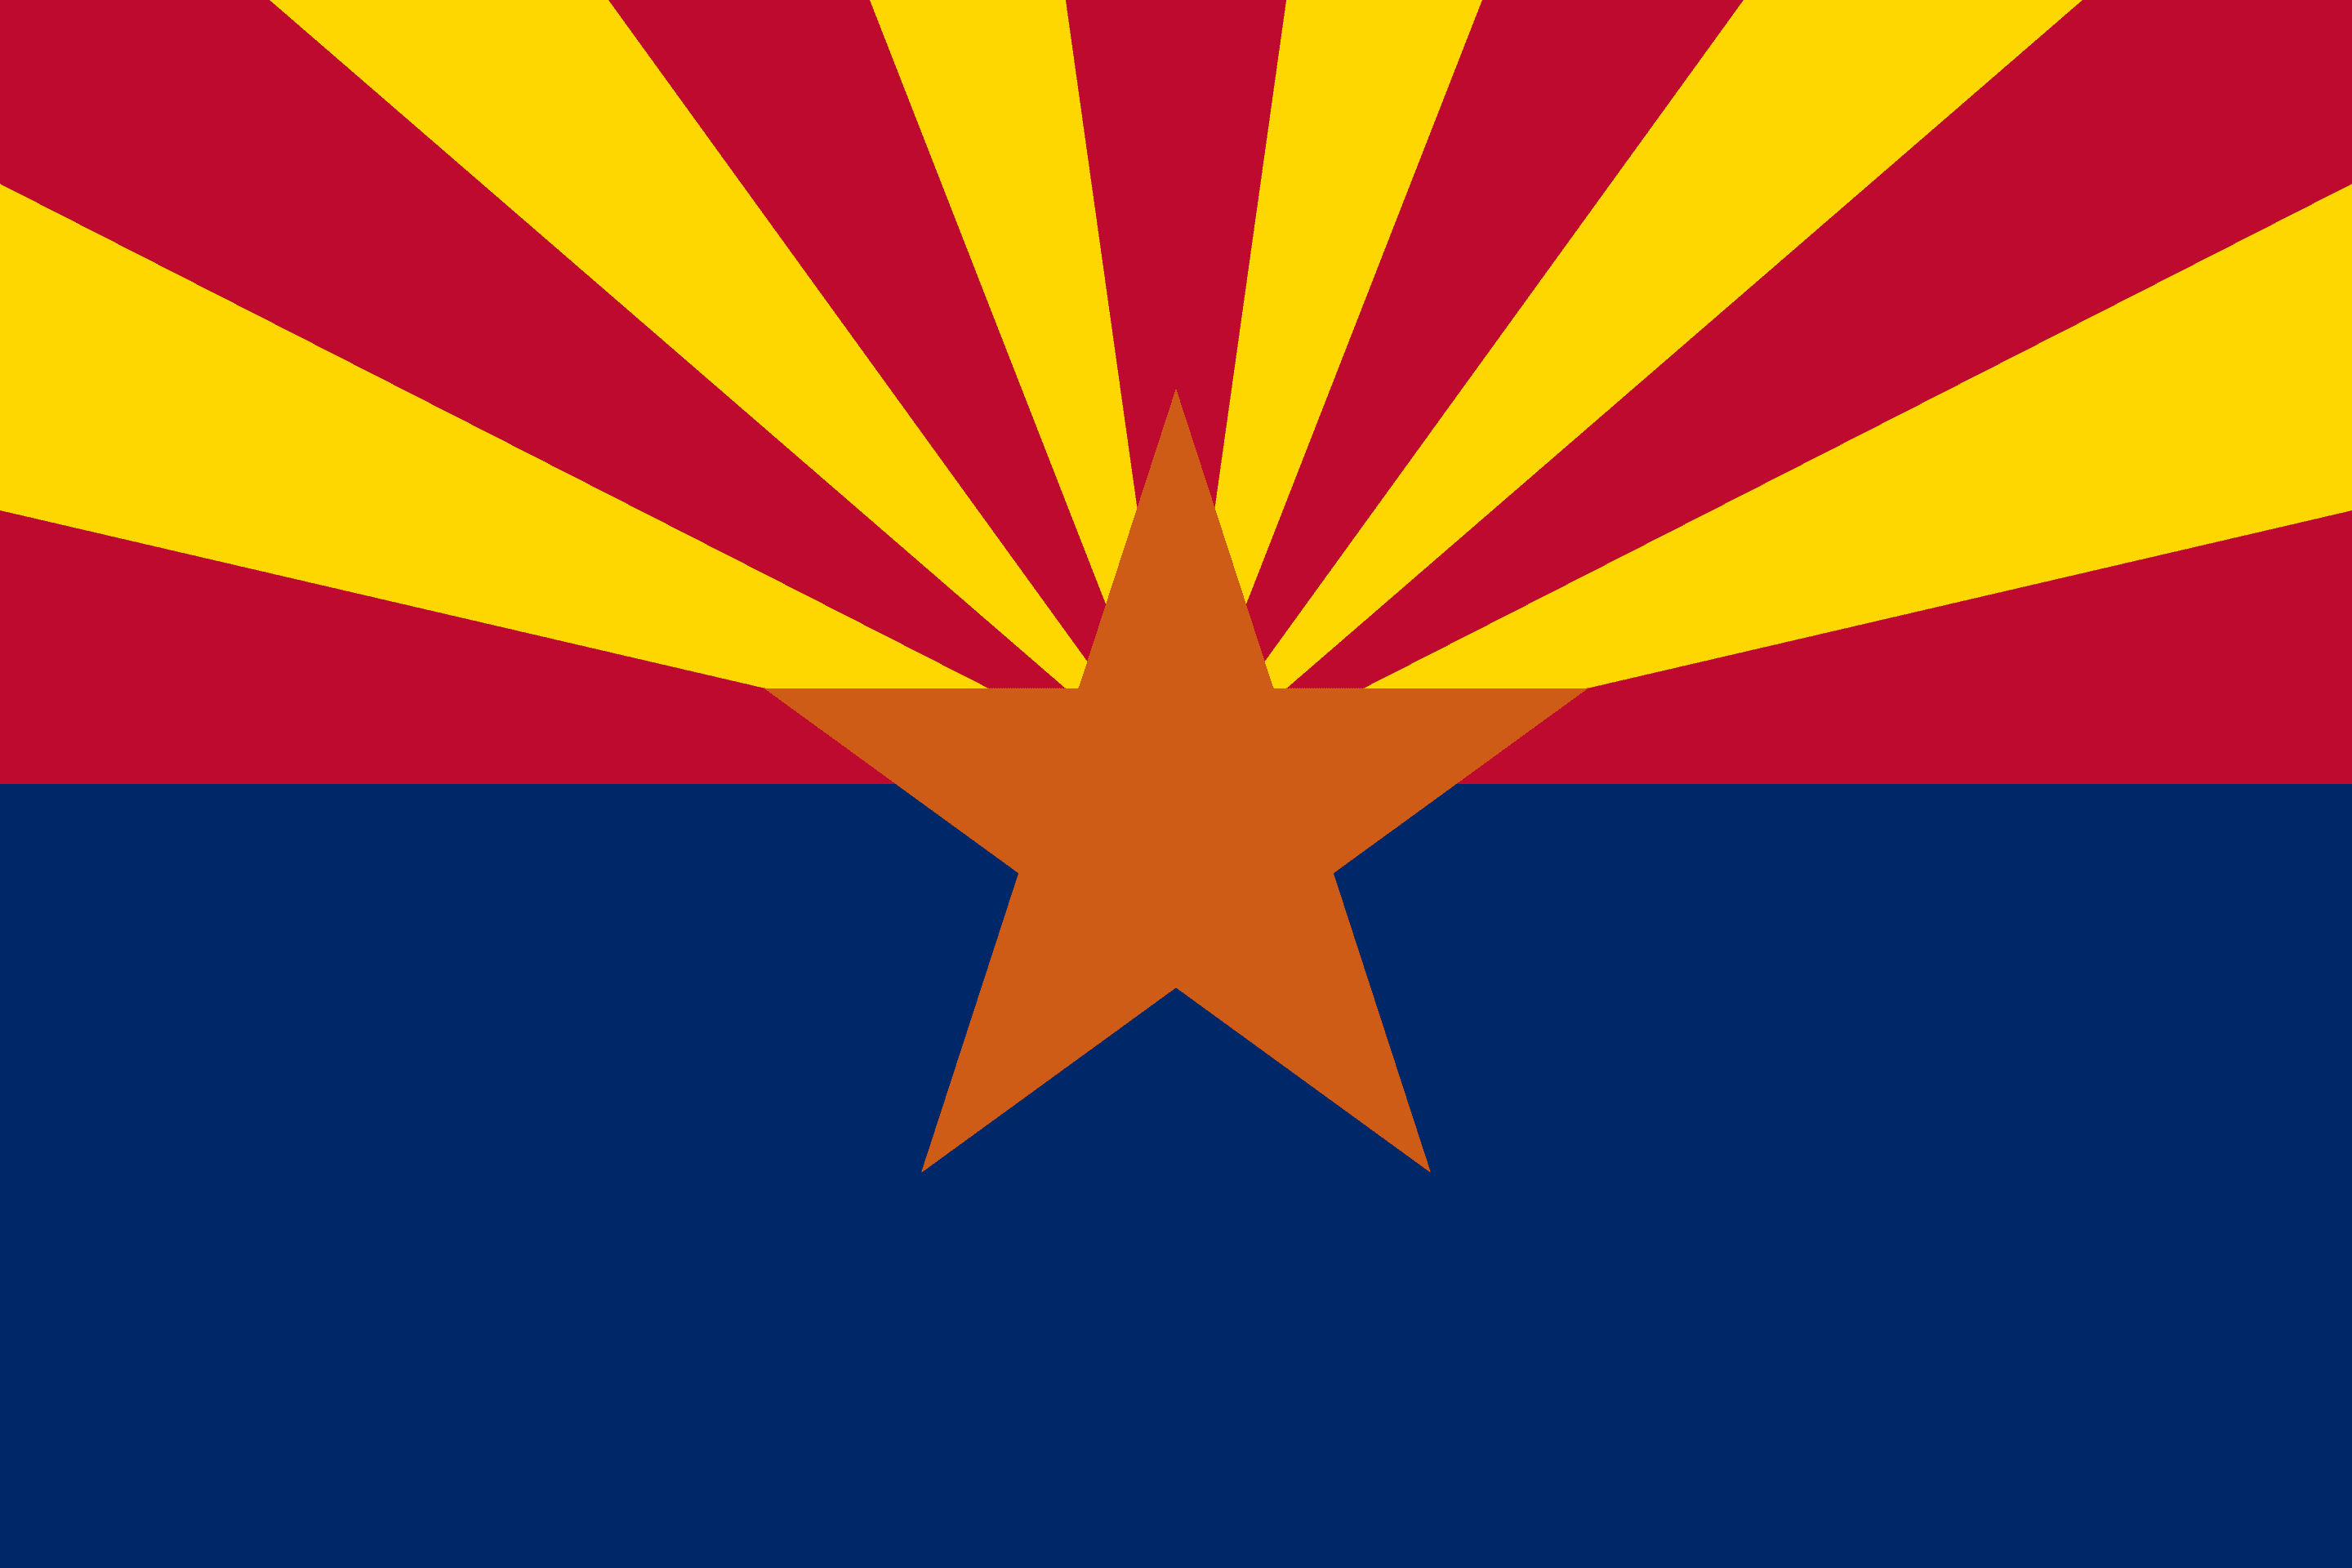 State of Arizona Flag - Arizona Drone Laws